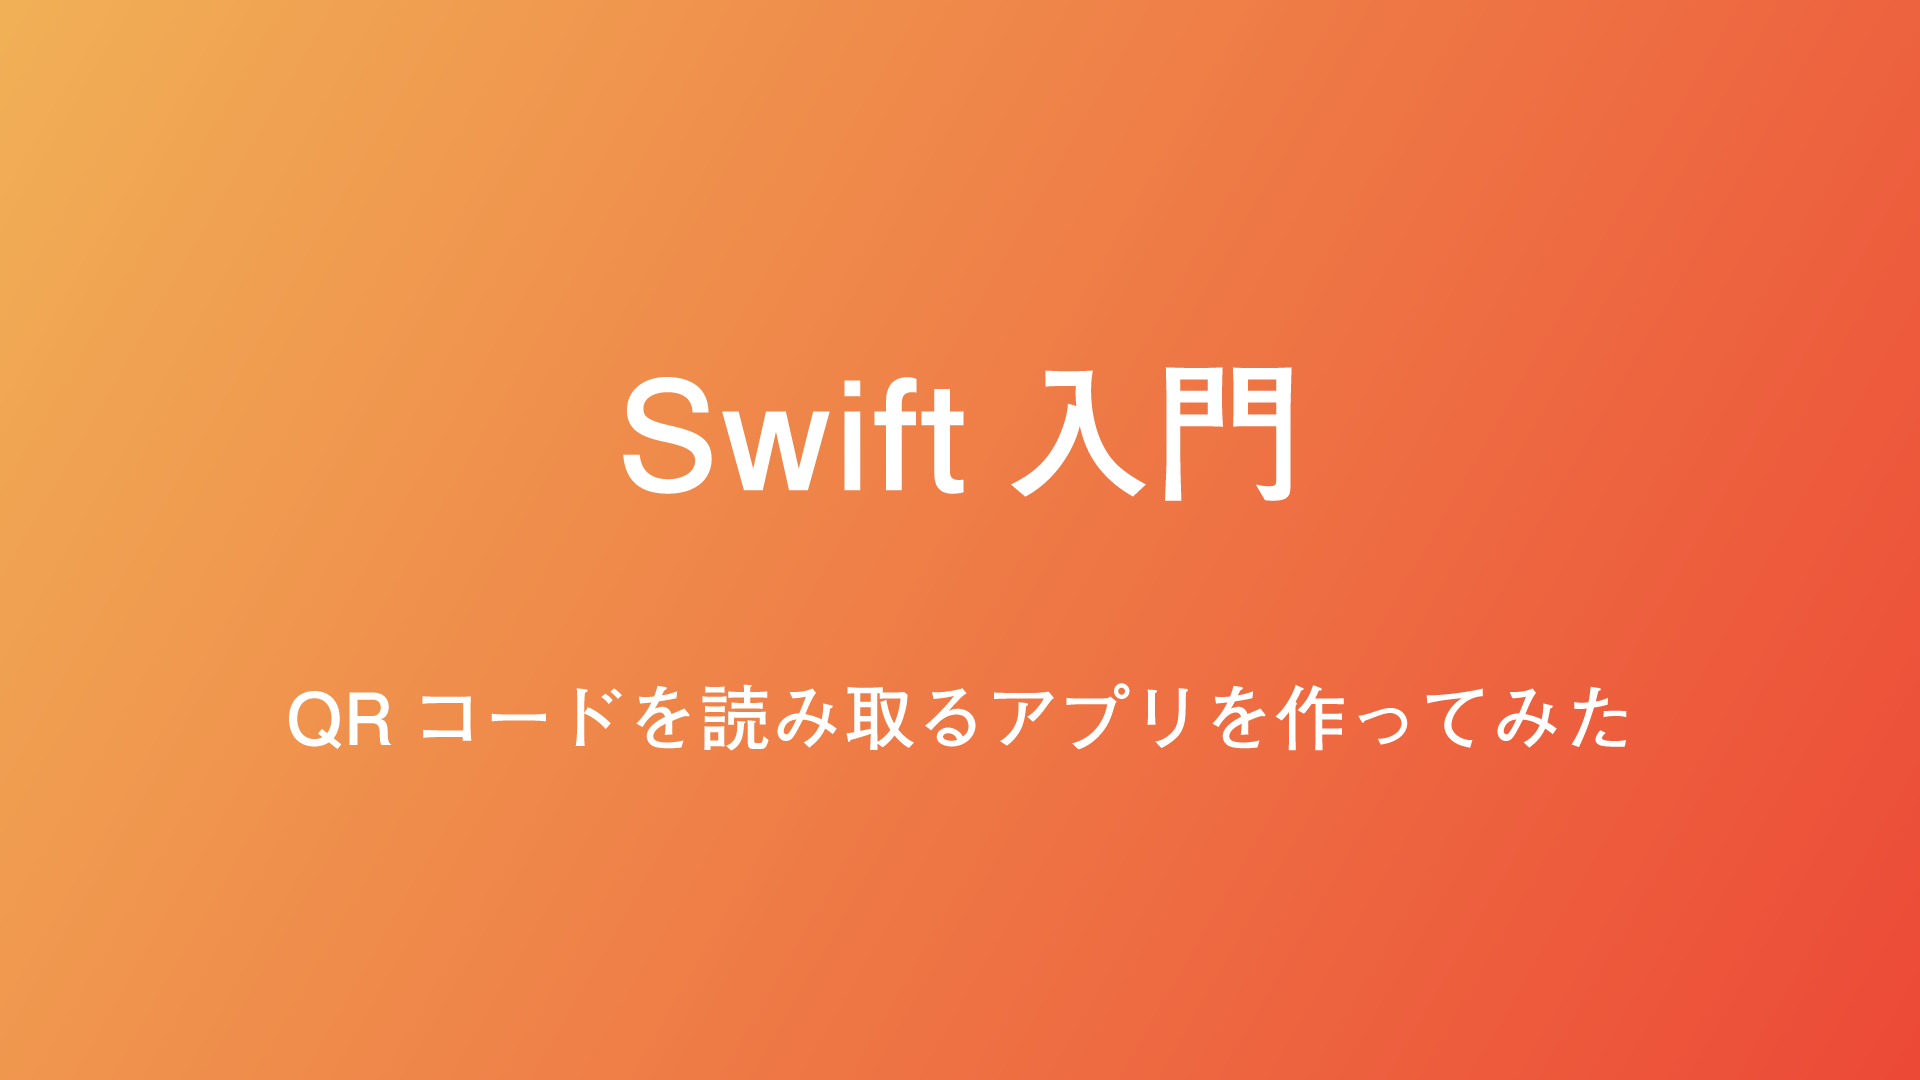 Swift初心者が20時間で入門してQRコードを読み取るiPhoneアプリを作った話。